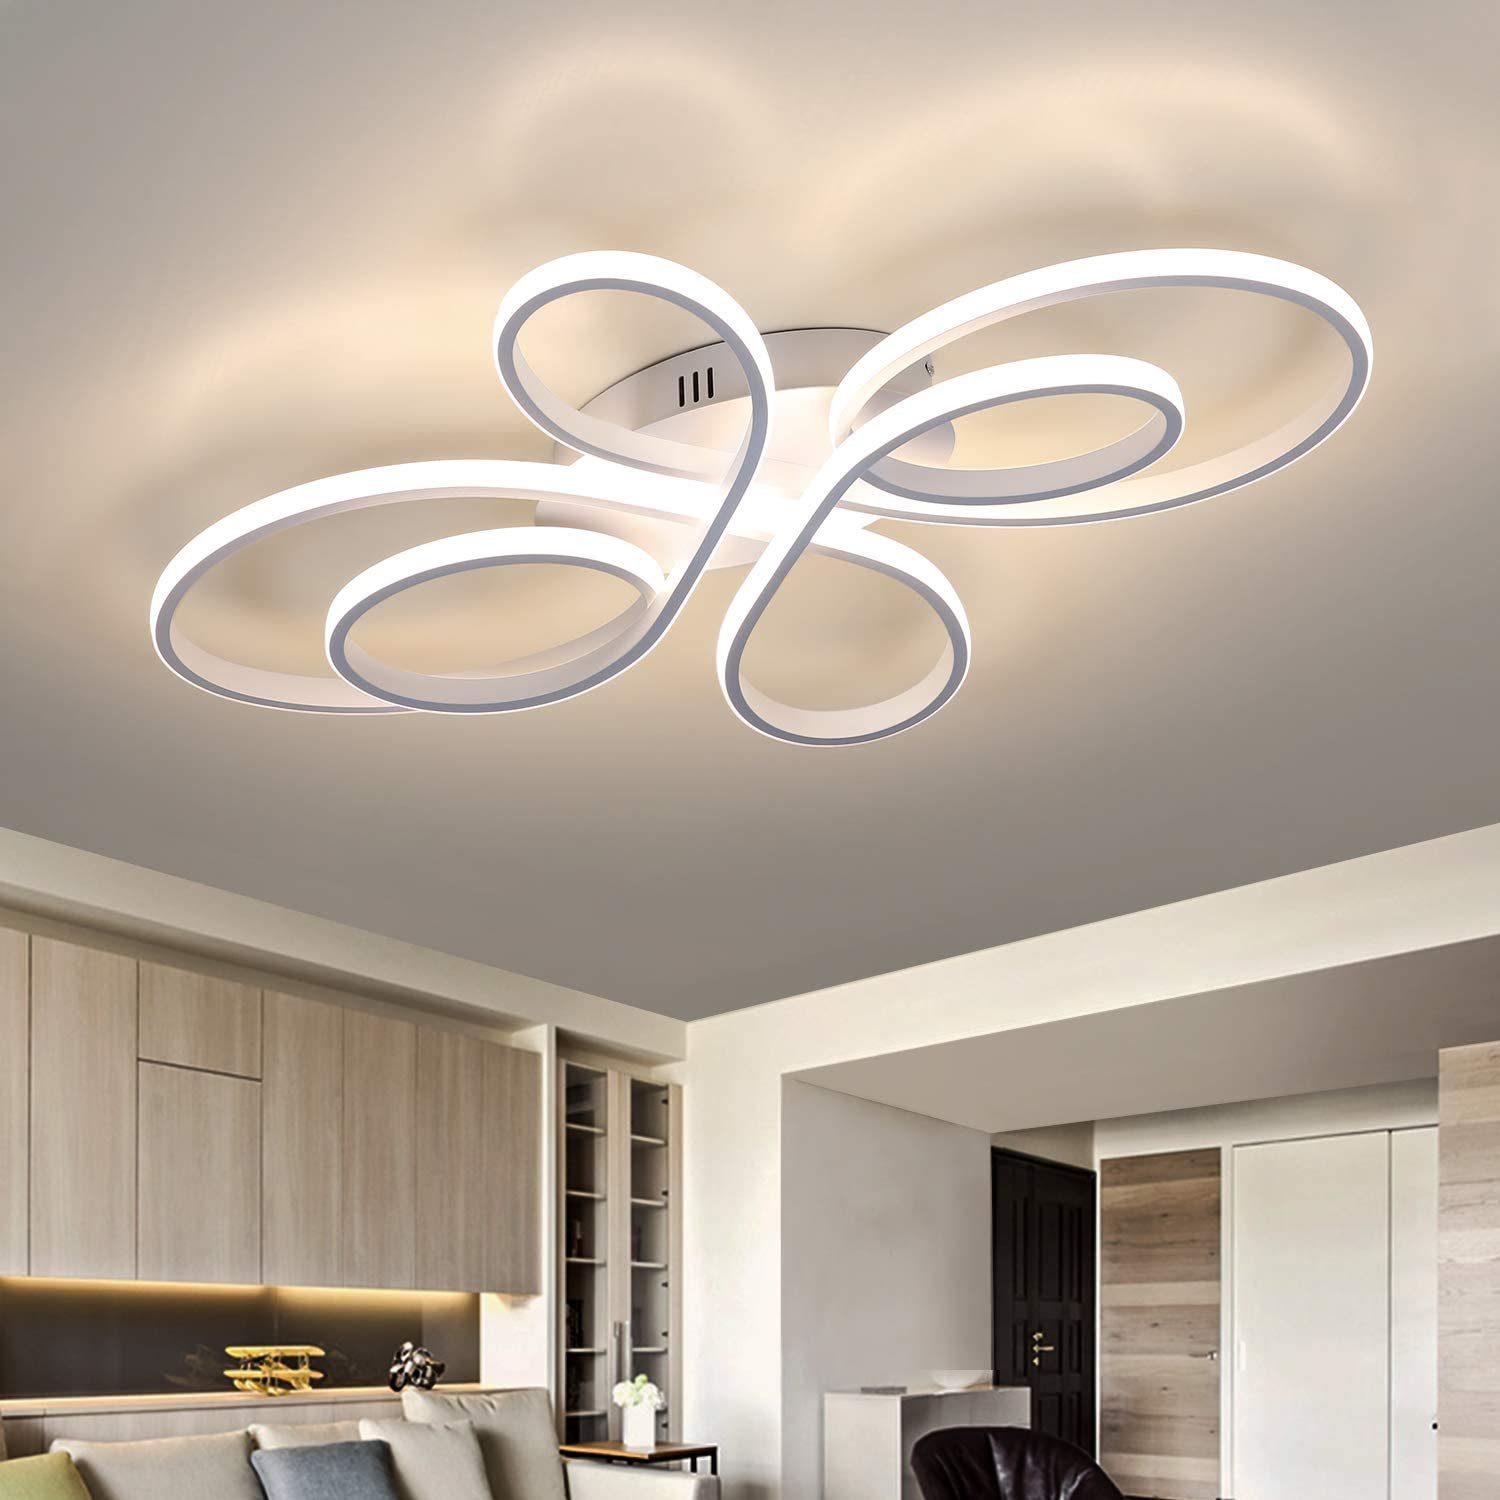 Acryl LED Deckenlampe Dimmbar Deckenleuchte Wohnzimmer Lampe mit Fernbedienung 